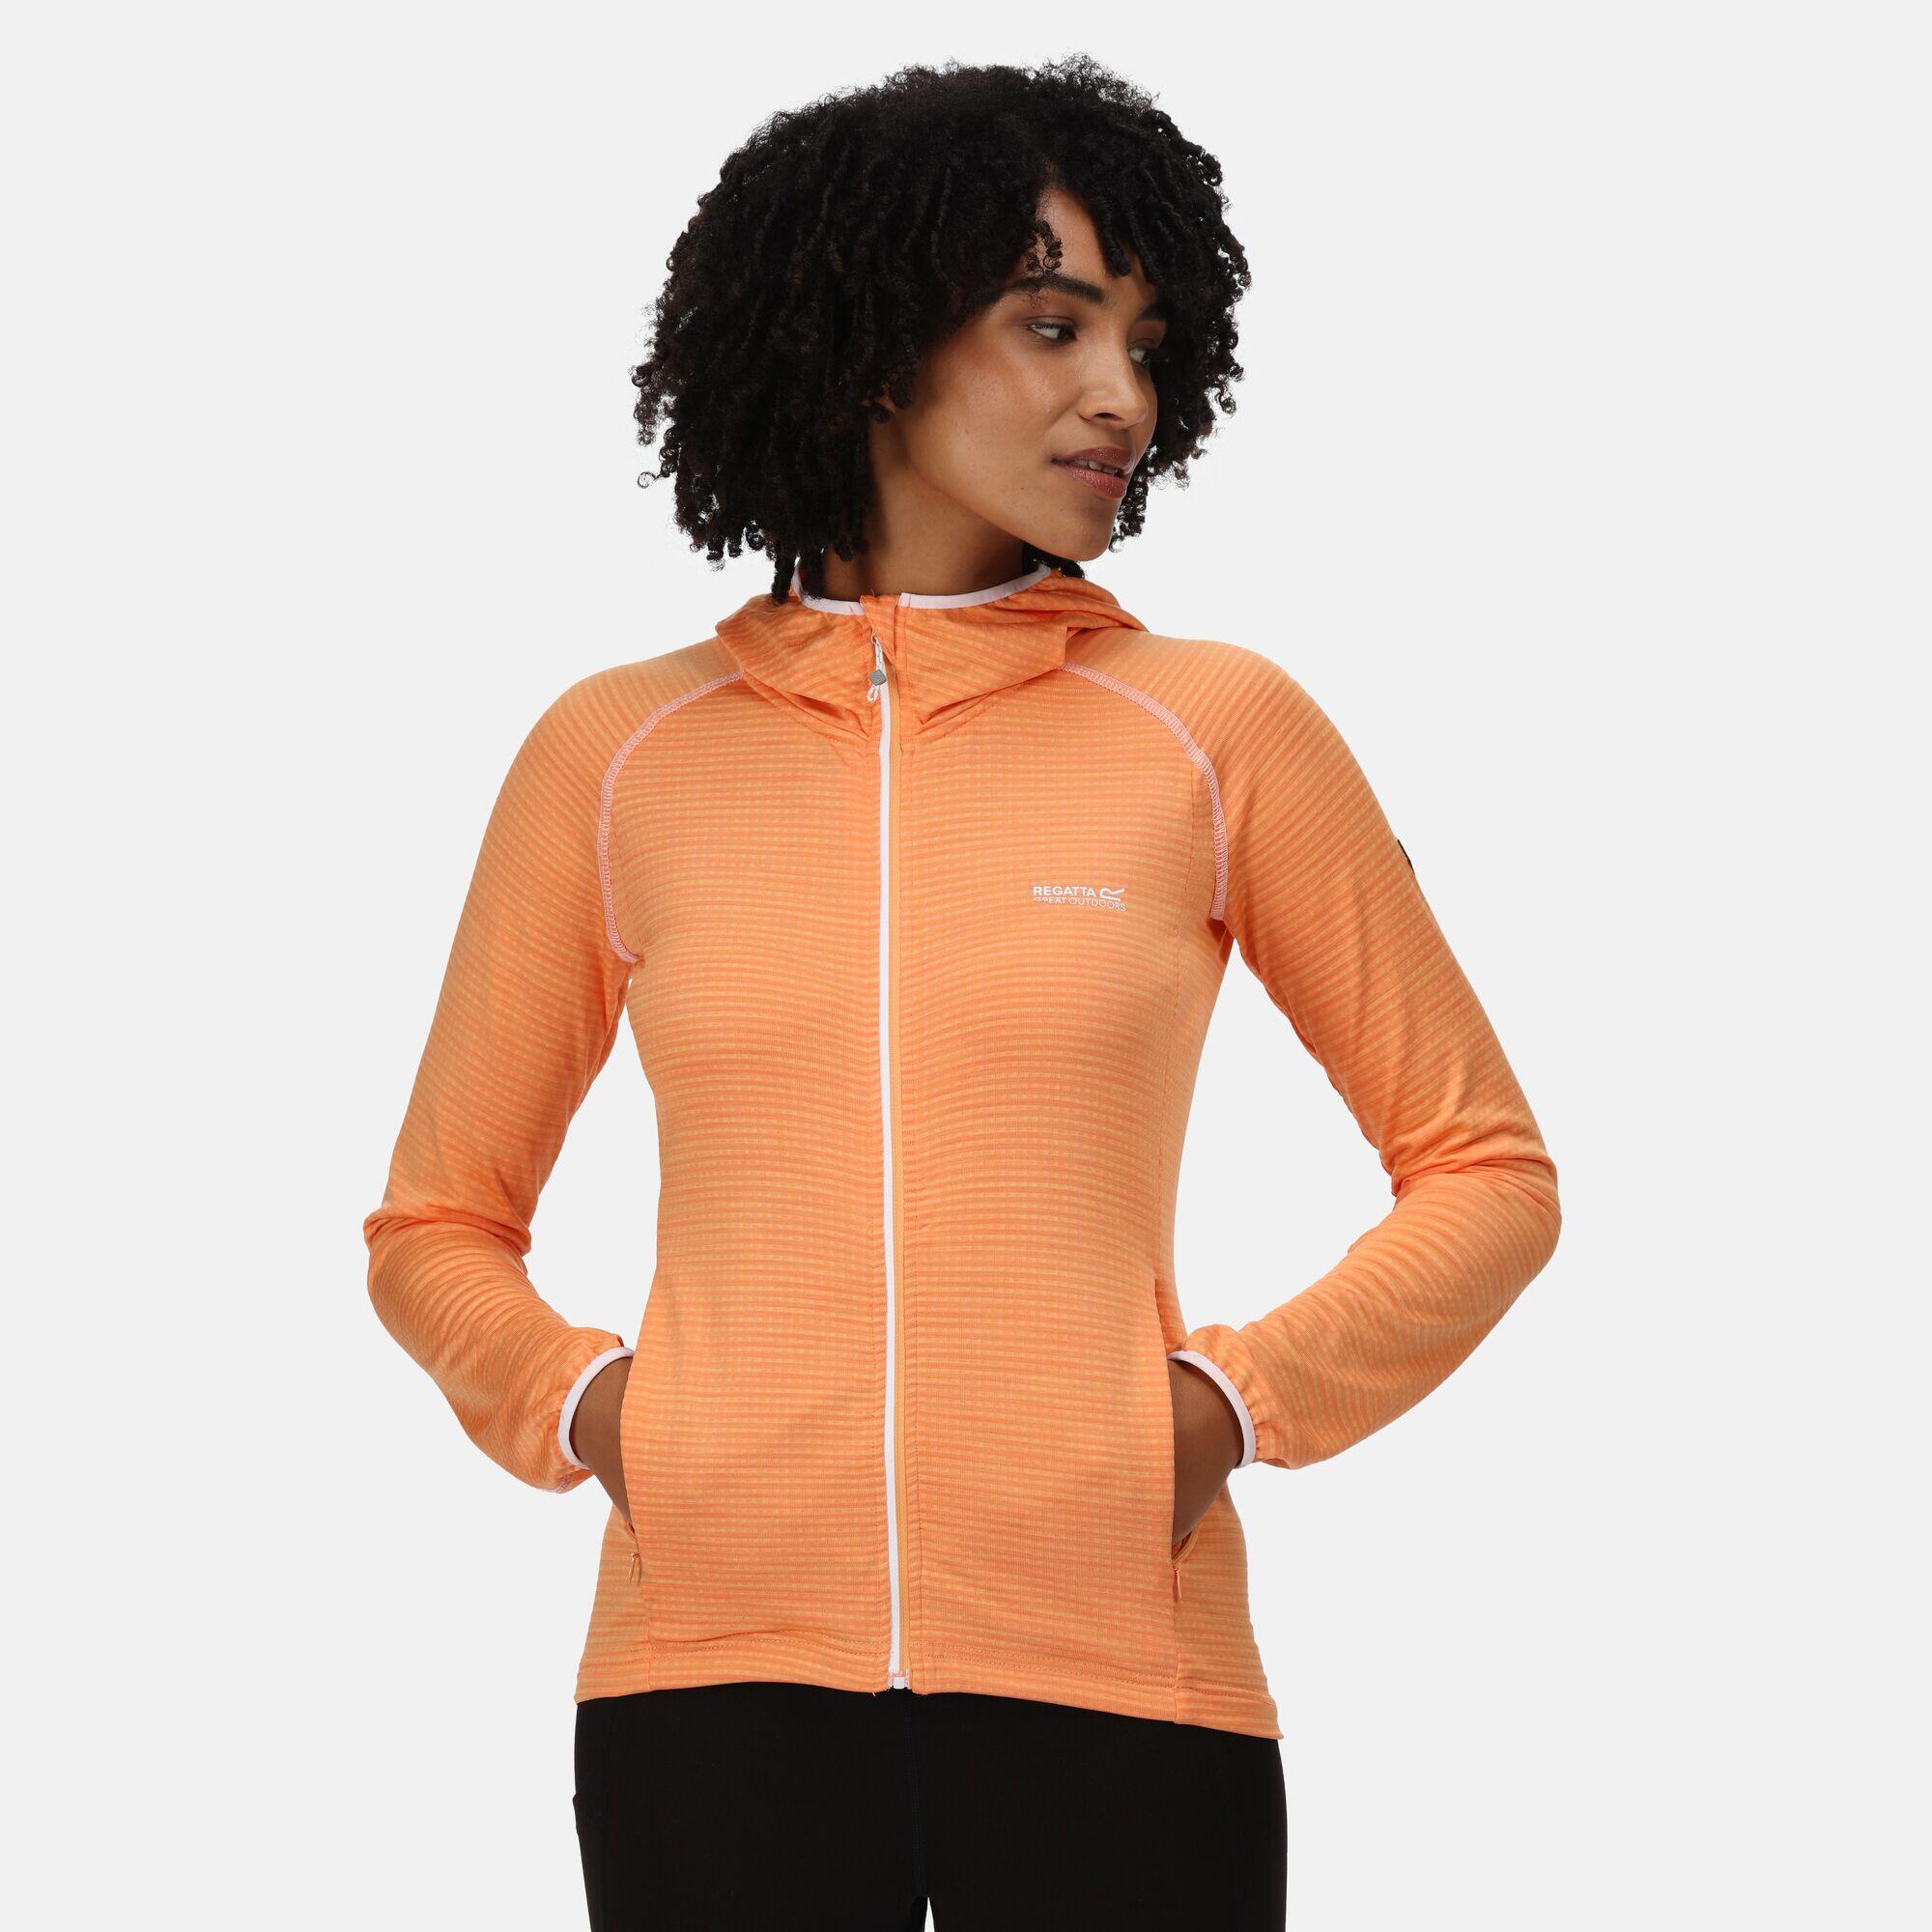 REGATTA Yonder Women's Hiking Full Zip Hoodie - Papaya Orange